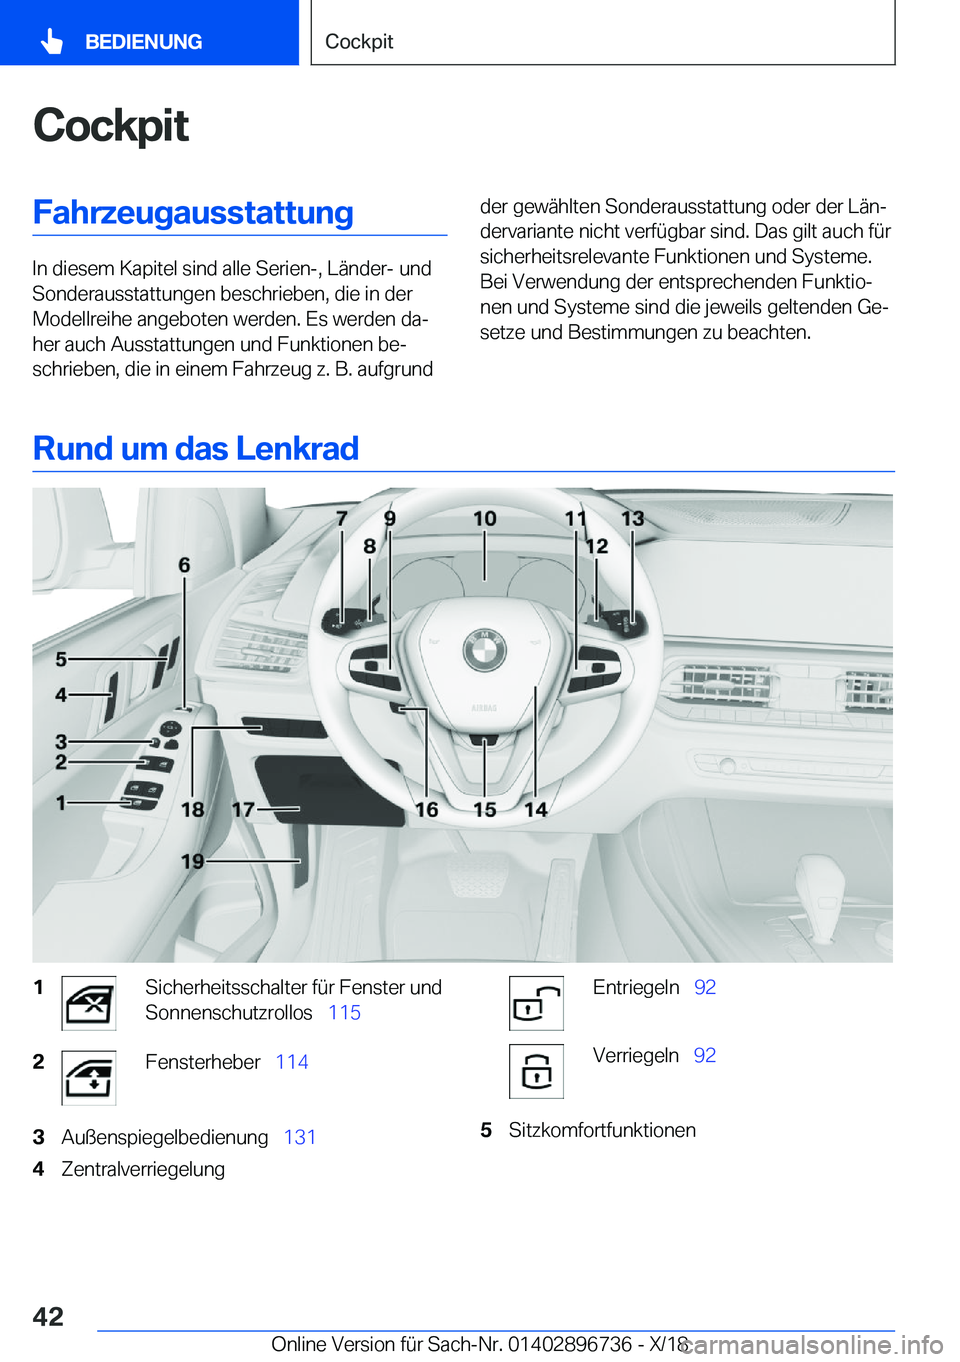 BMW X5 2019  Betriebsanleitungen (in German) �C�o�c�k�p�i�t�F�a�h�r�z�e�u�g�a�u�s�s�t�a�t�t�u�n�g
�I�n��d�i�e�s�e�m��K�a�p�i�t�e�l��s�i�n�d��a�l�l�e��S�e�r�i�e�n�-�,��L�